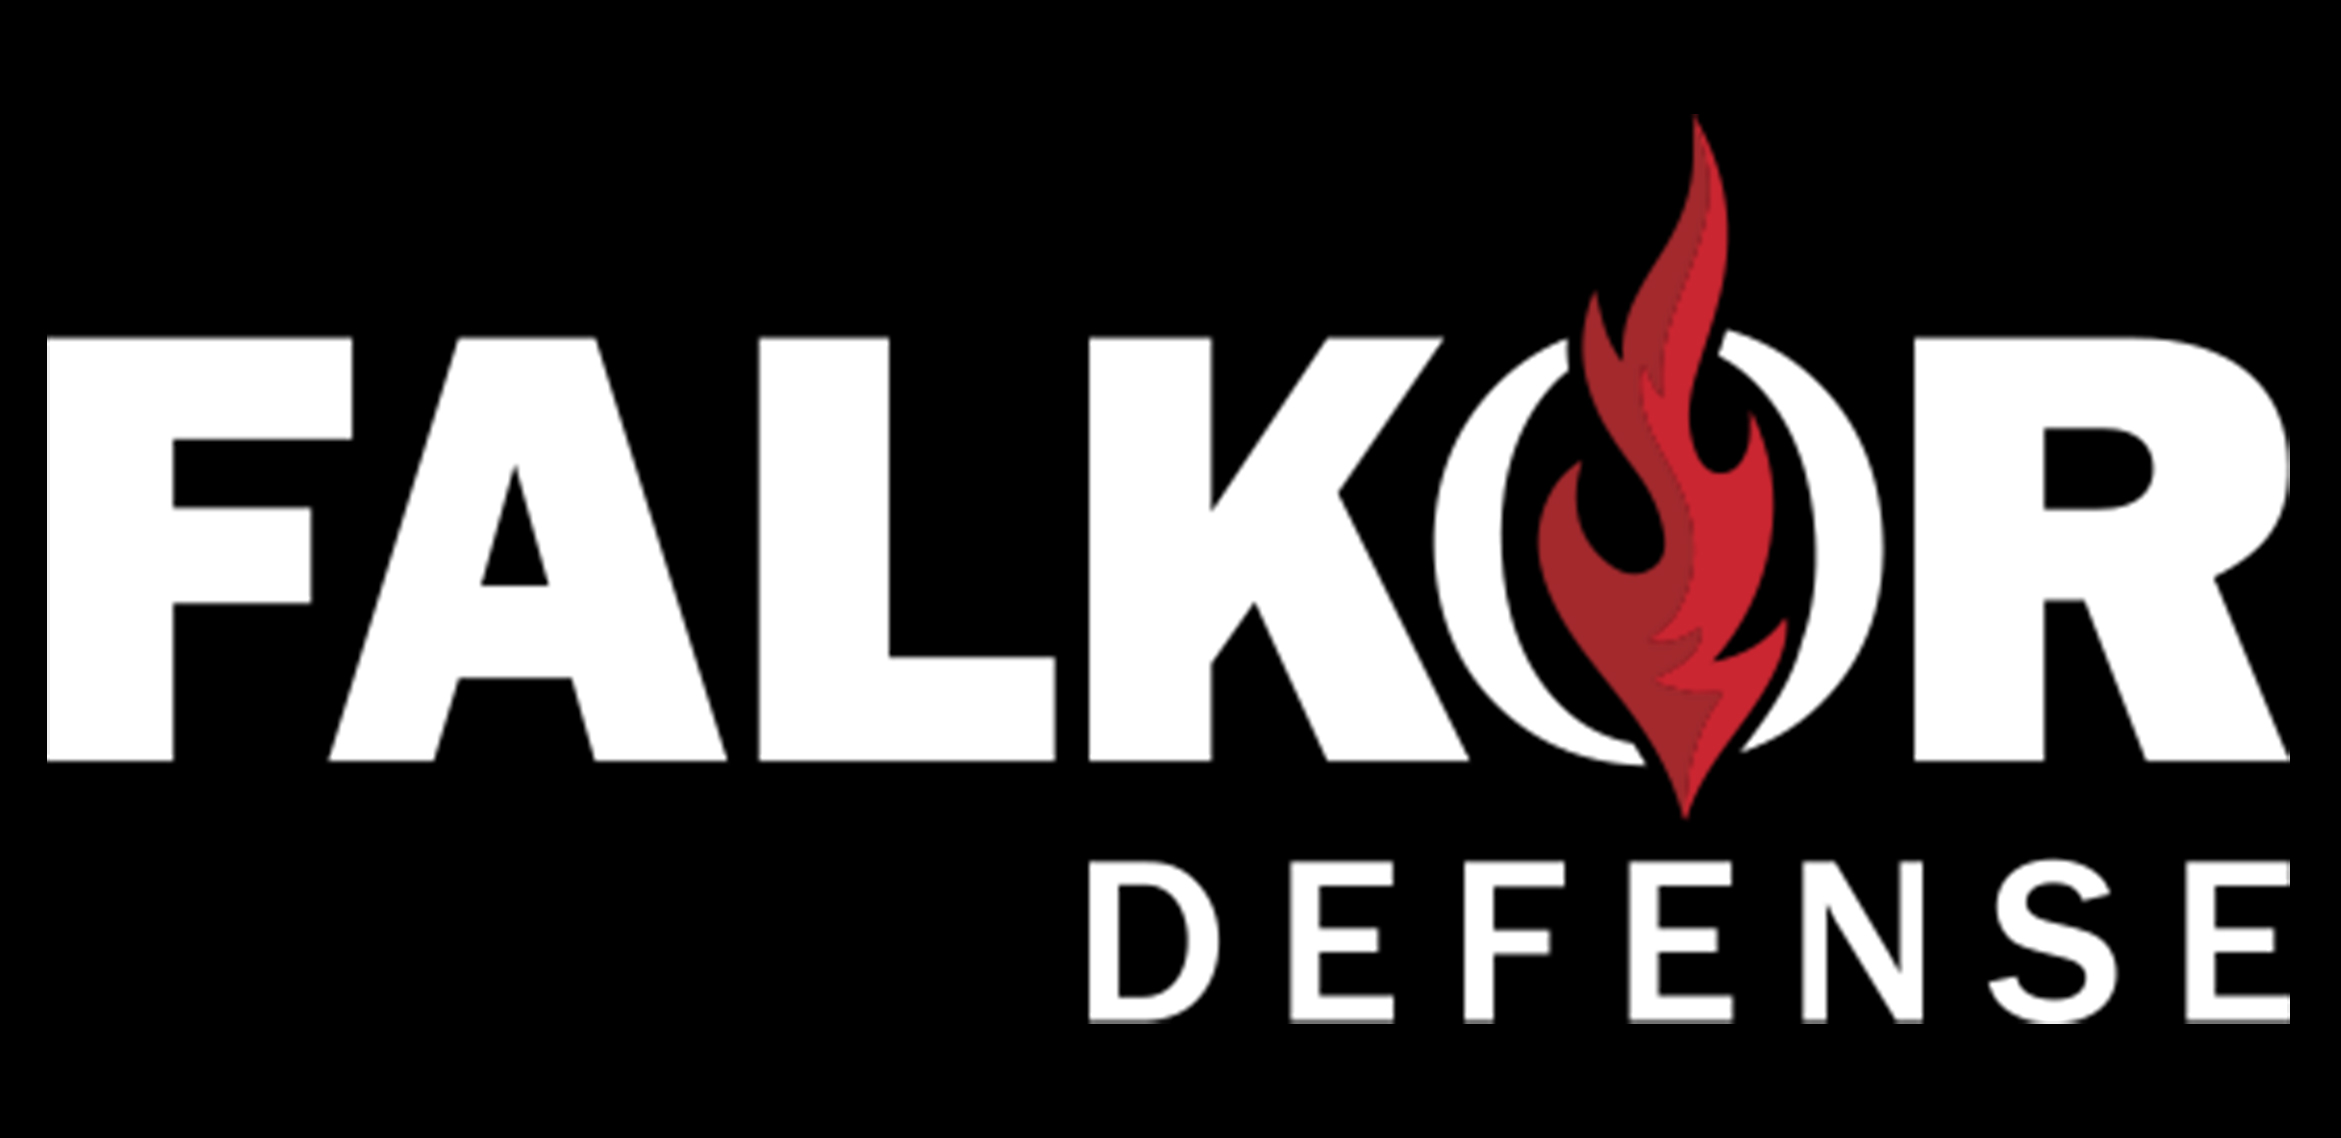 Falkor Defense Logo.jpg